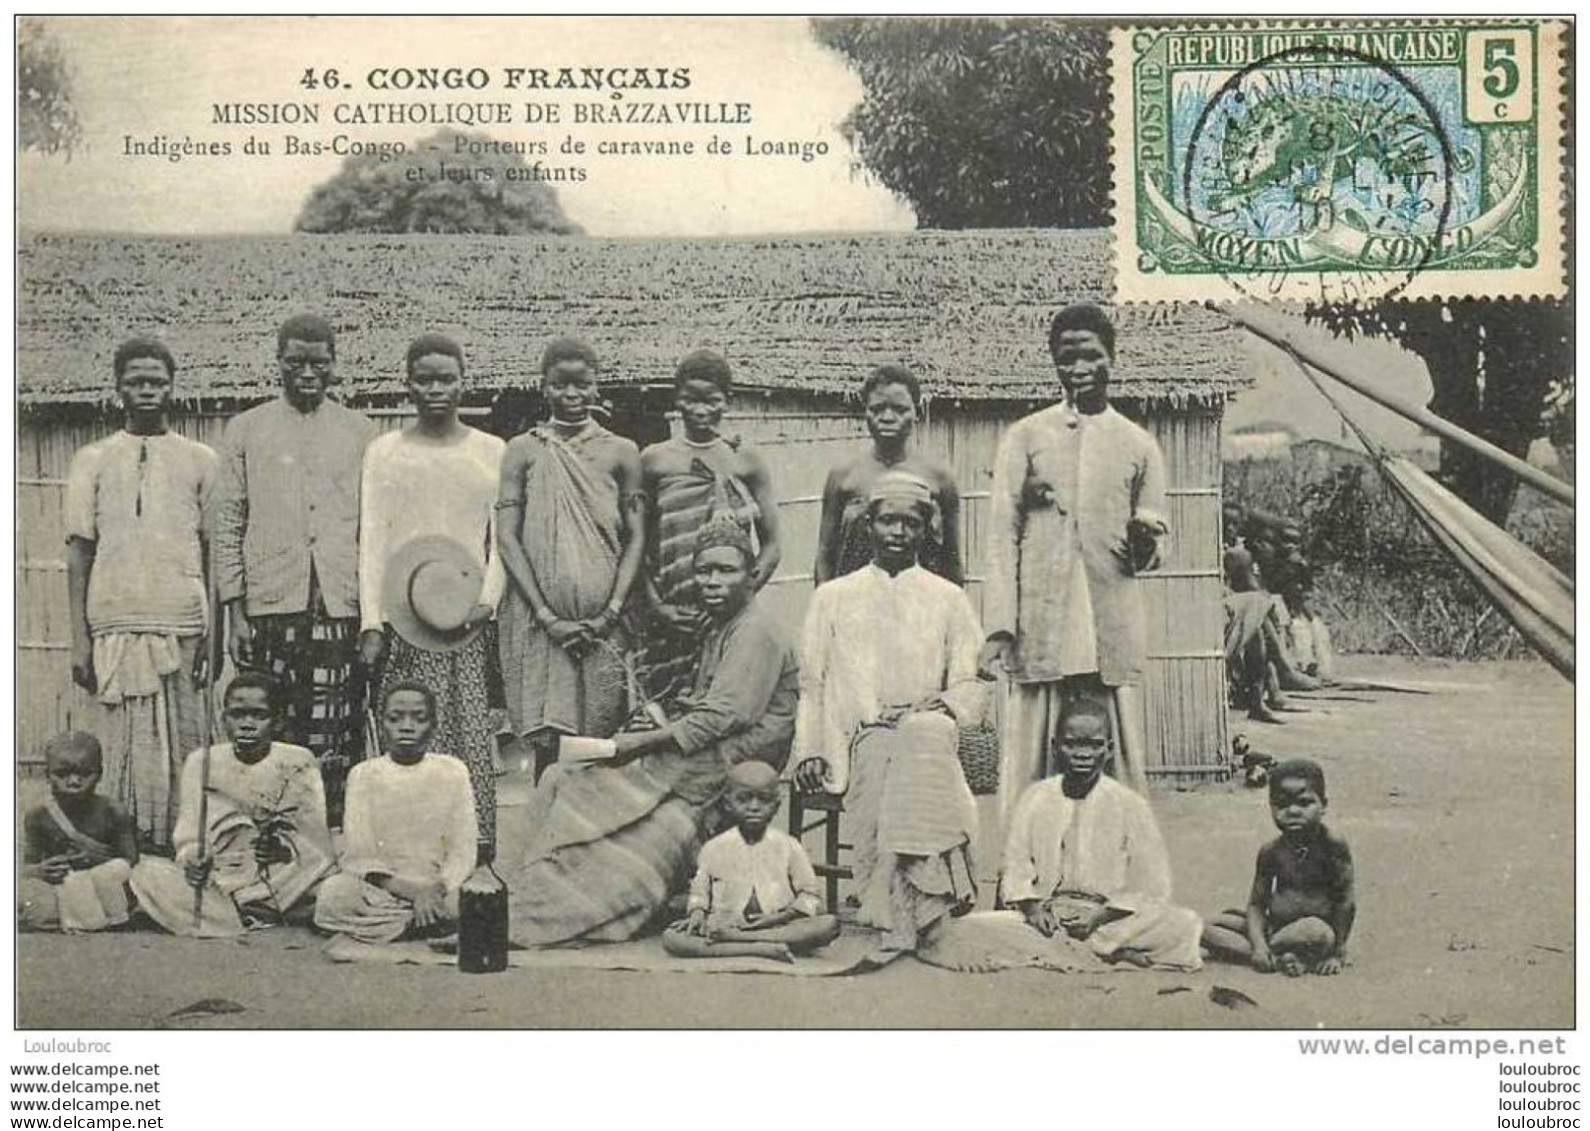 CONGO FRANCAIS INDIGENES DU BAS CONGO PORTEURS DE CARAVANE DE LOANGO ET LEURS ENFANTS - French Congo